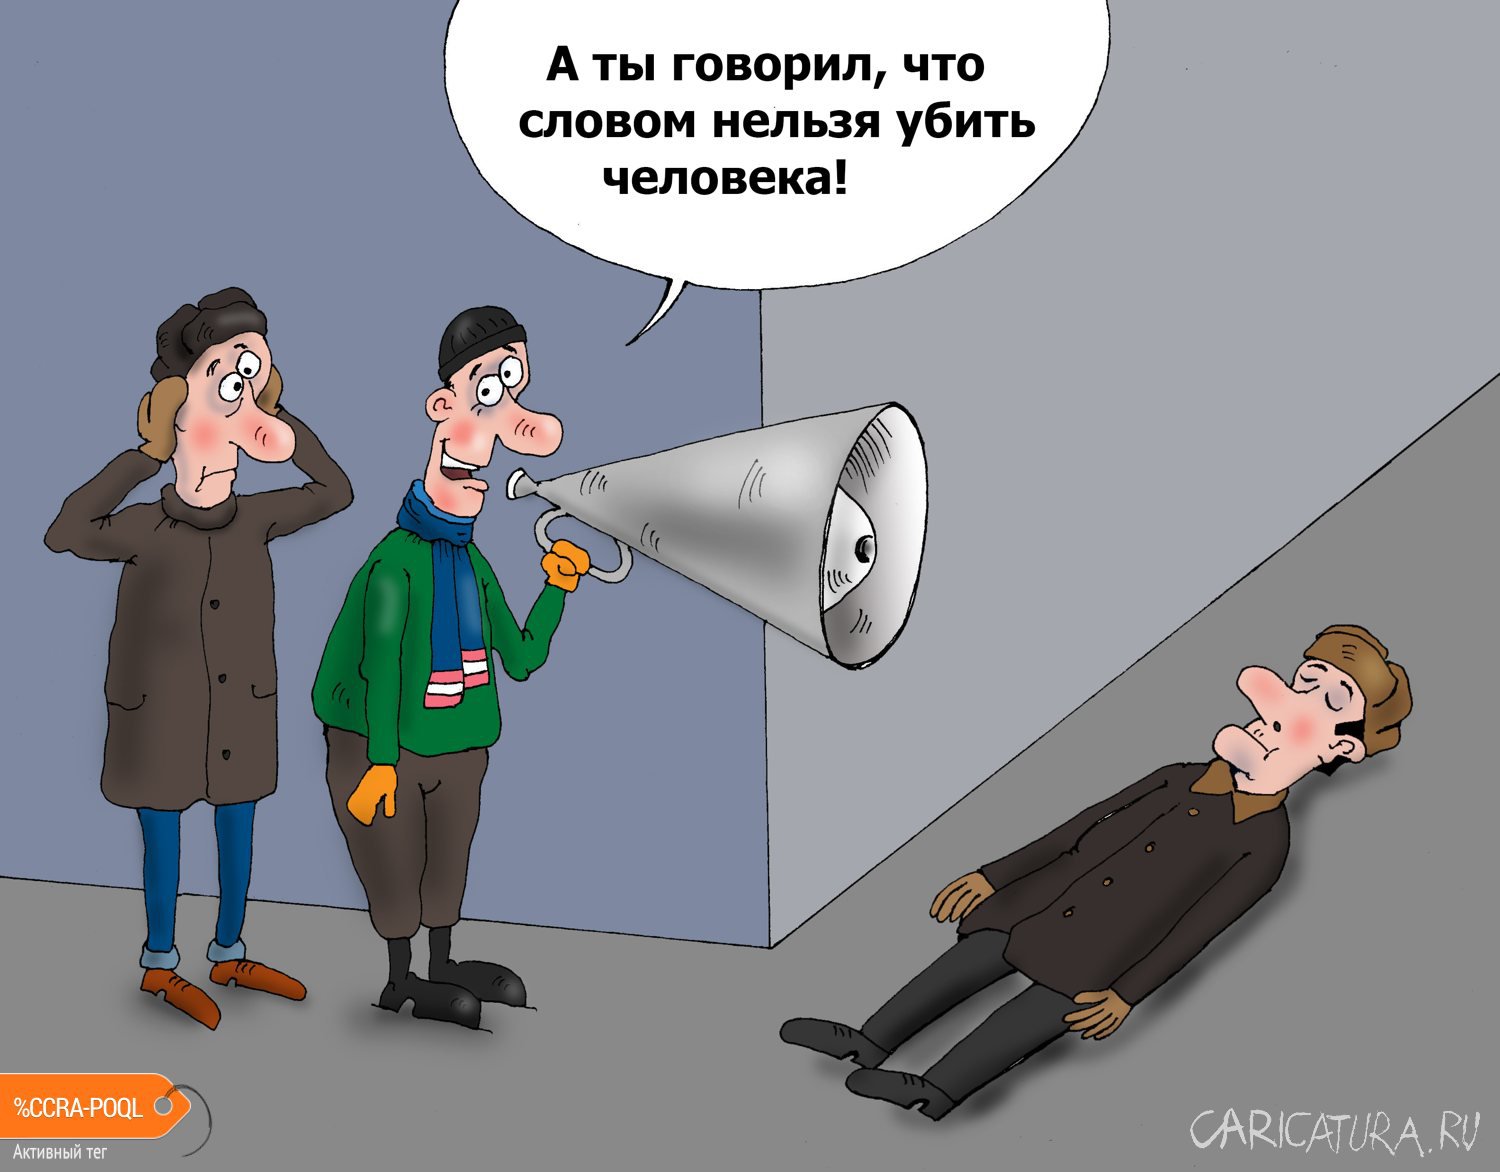 Карикатура "Мегафон", Валерий Тарасенко